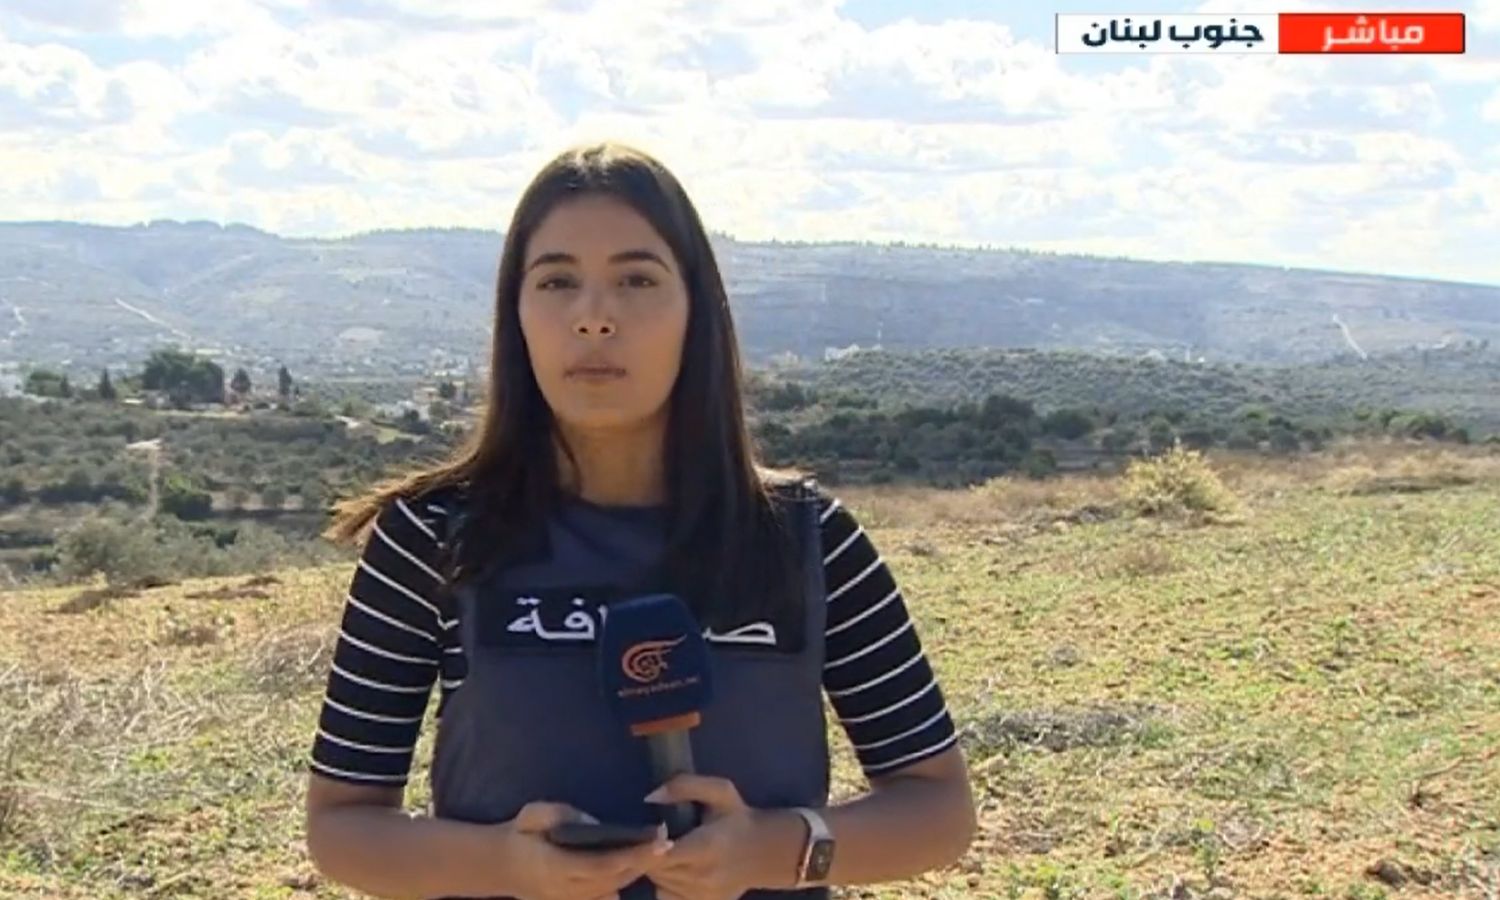 مراسلة قناة "الميادين" فرح عمر في ظهورها الإعلامي الأخير قبل مقتلها بقصف إسرائيلي في الجنوب اللبناني- 21 من تشرين الثاني 2023 (الميادين/ لقطة شاشة)